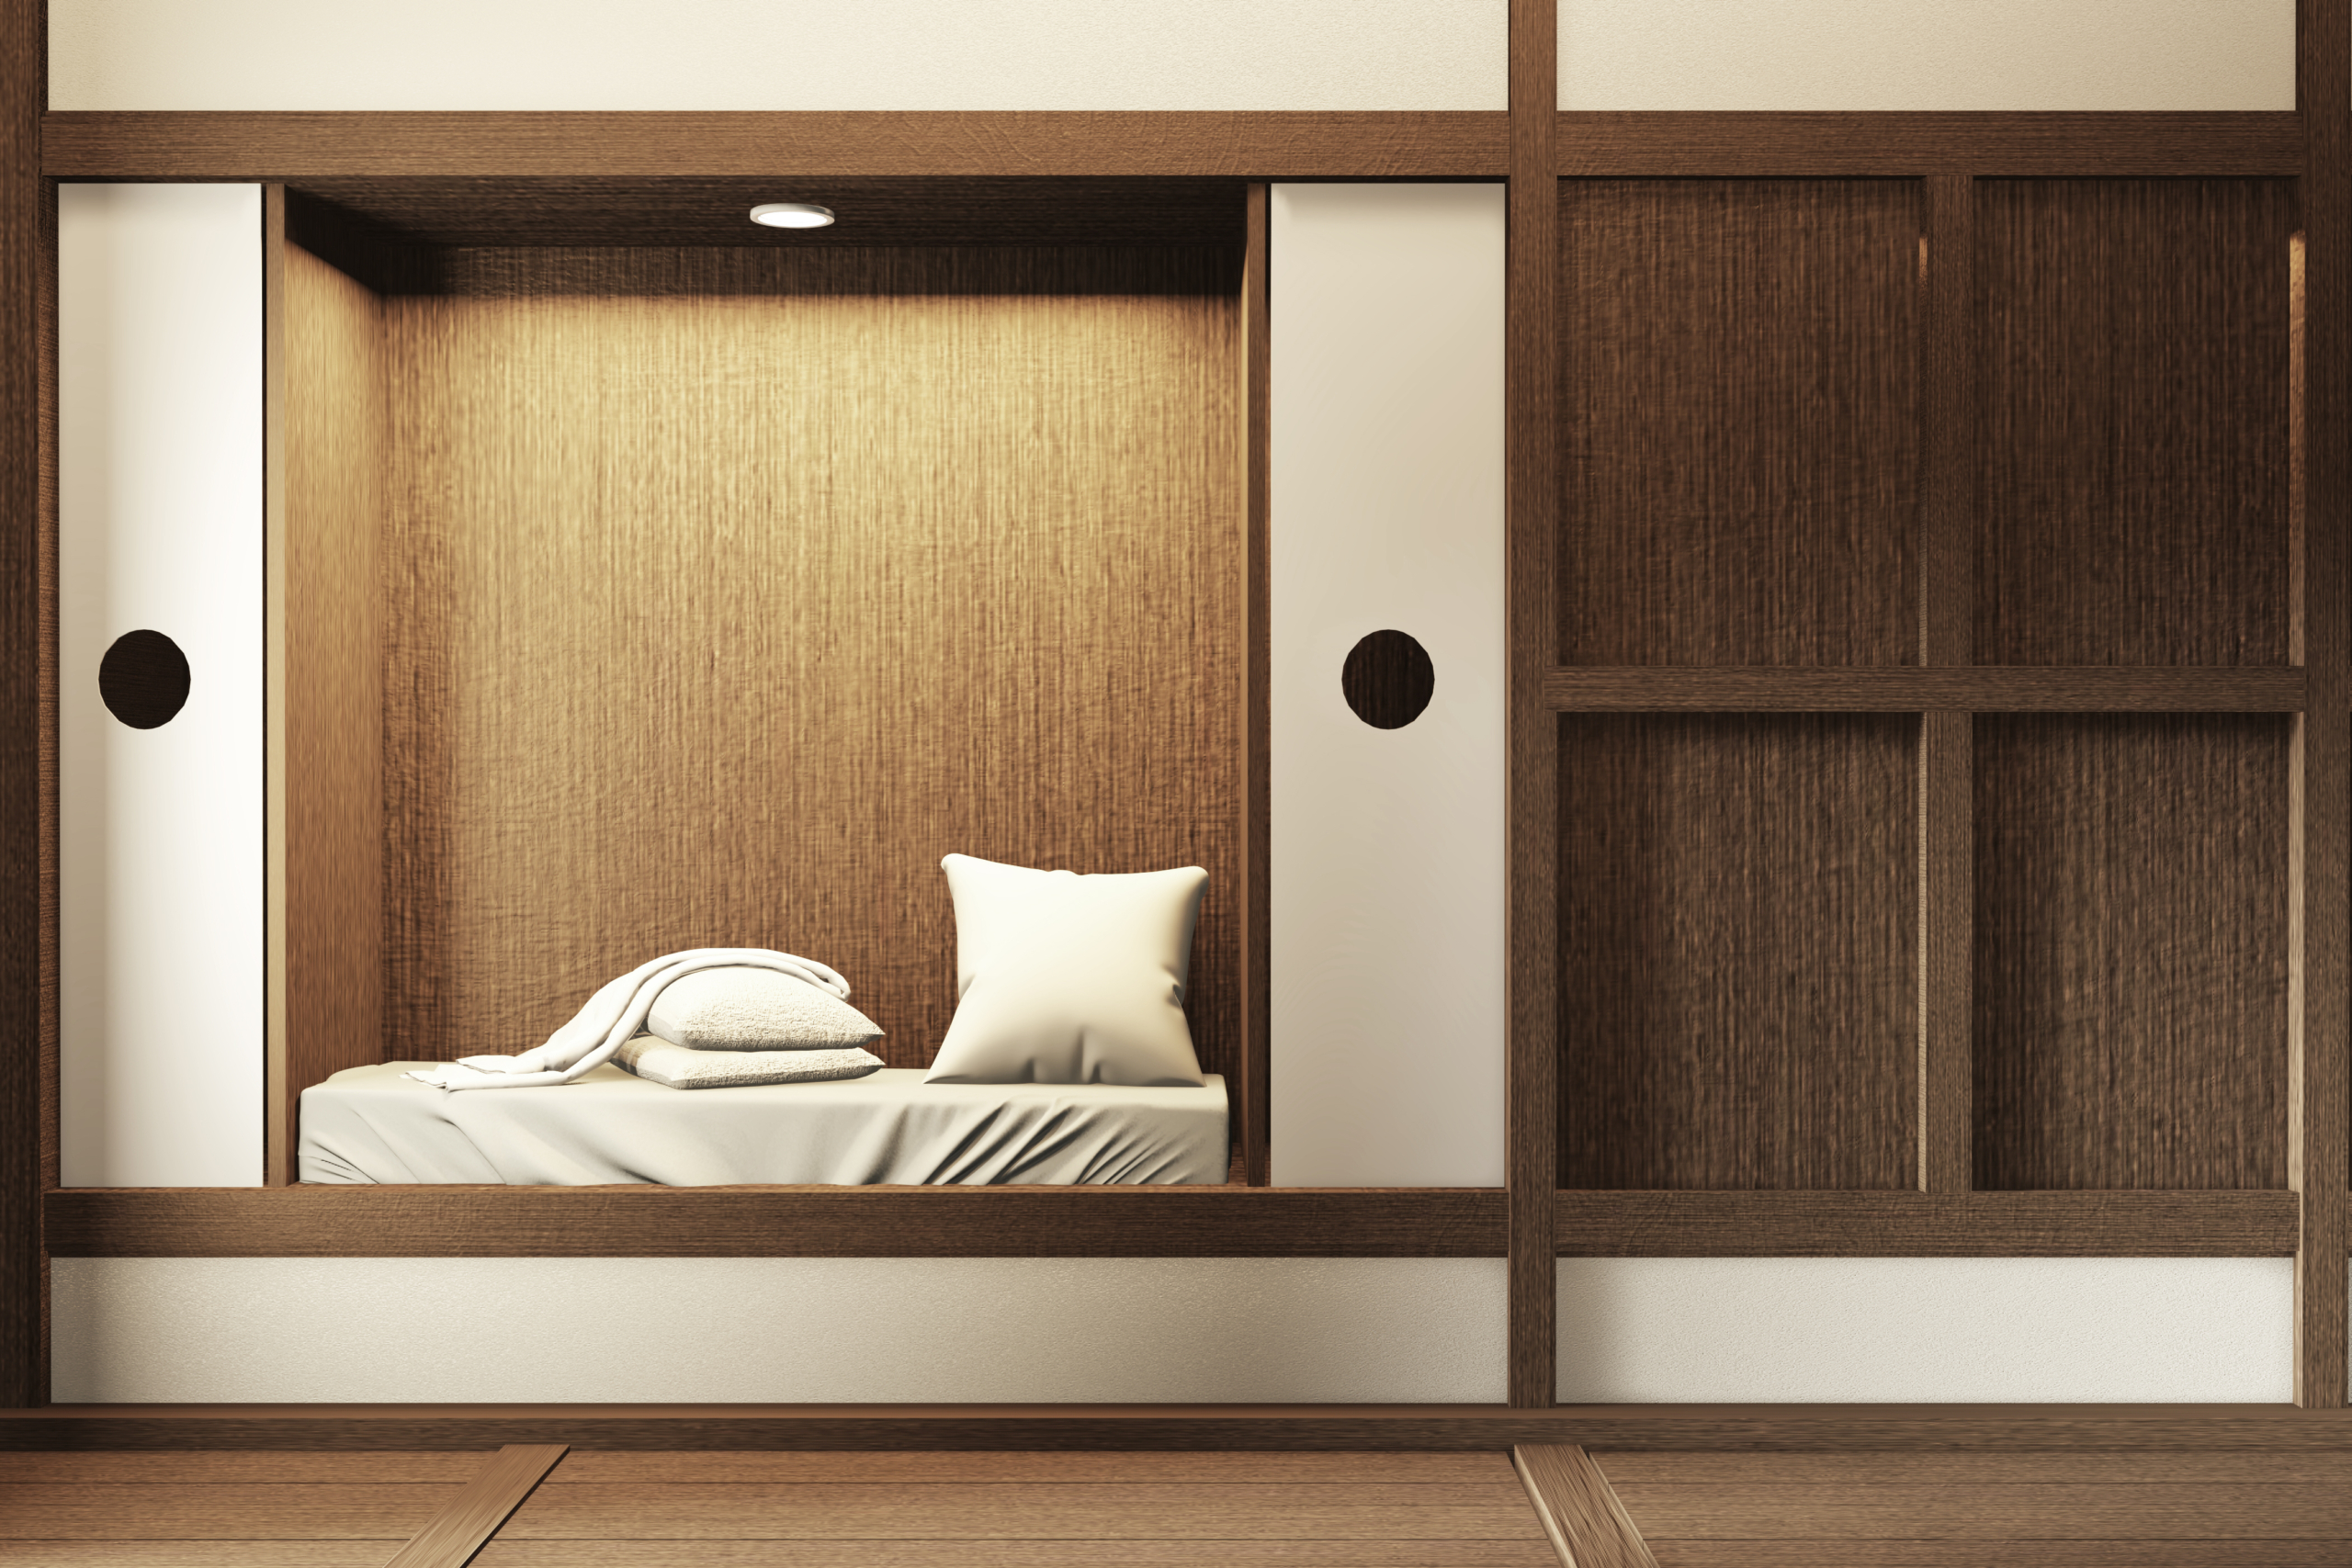 Tạo một chiếc giường đơn giản trong bức tường dày hoặc tủ quần áo mà không chiếm không gian. (Ảnh: Shutterstock)